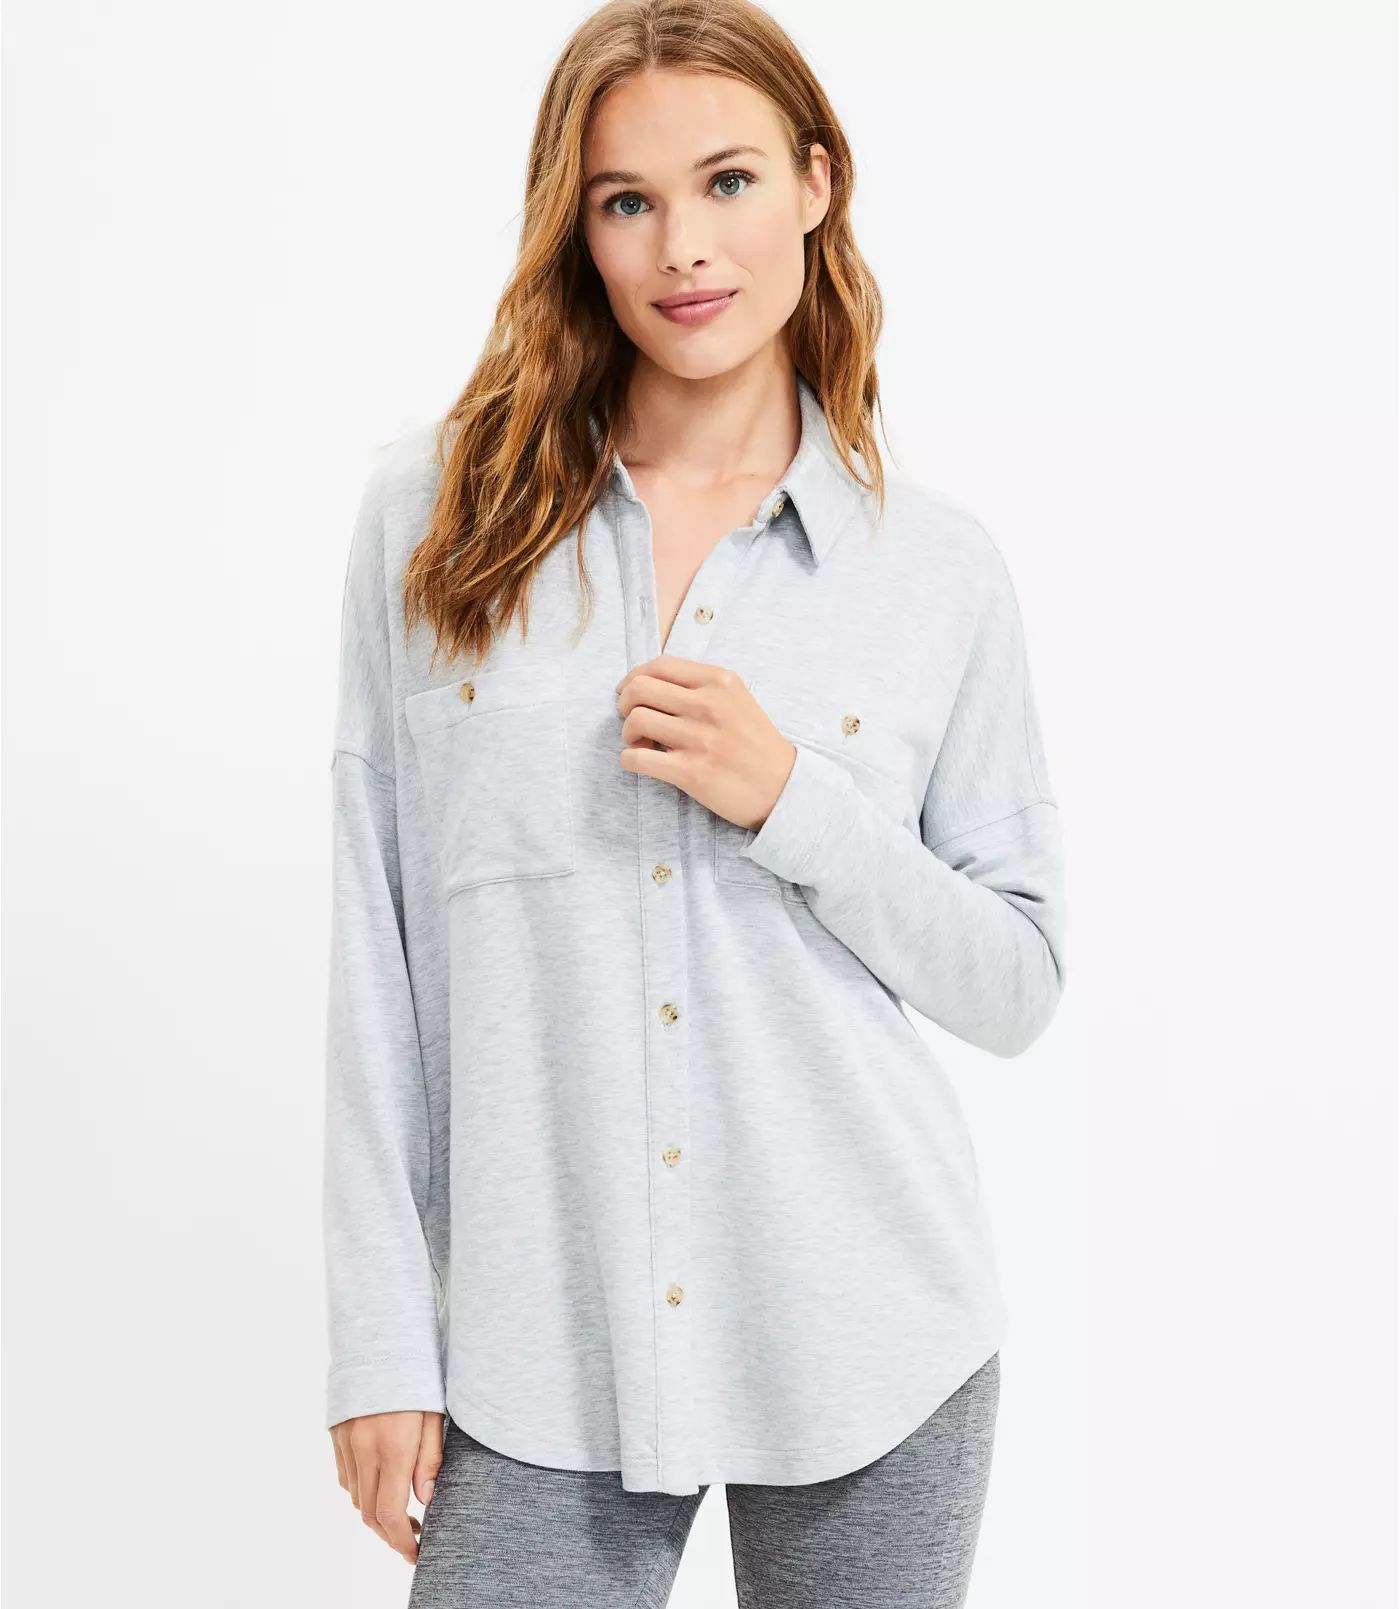 Lou & Grey Signaturesoft Tunic Shirt | LOFT